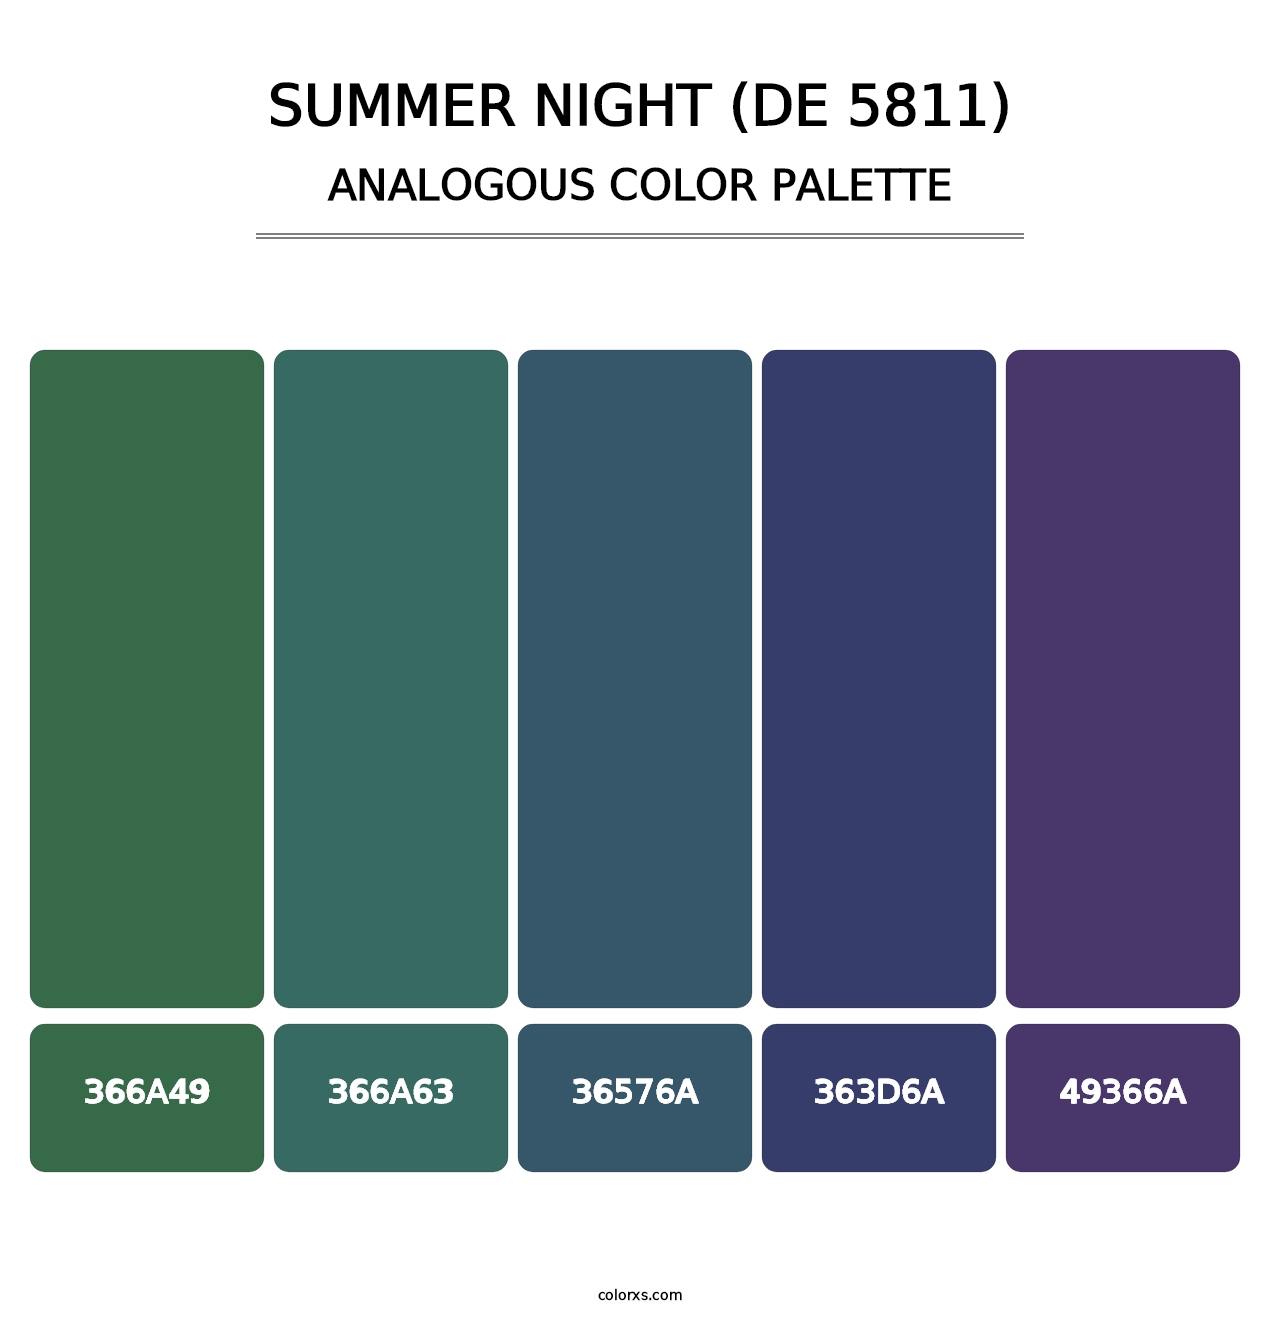 Summer Night (DE 5811) - Analogous Color Palette